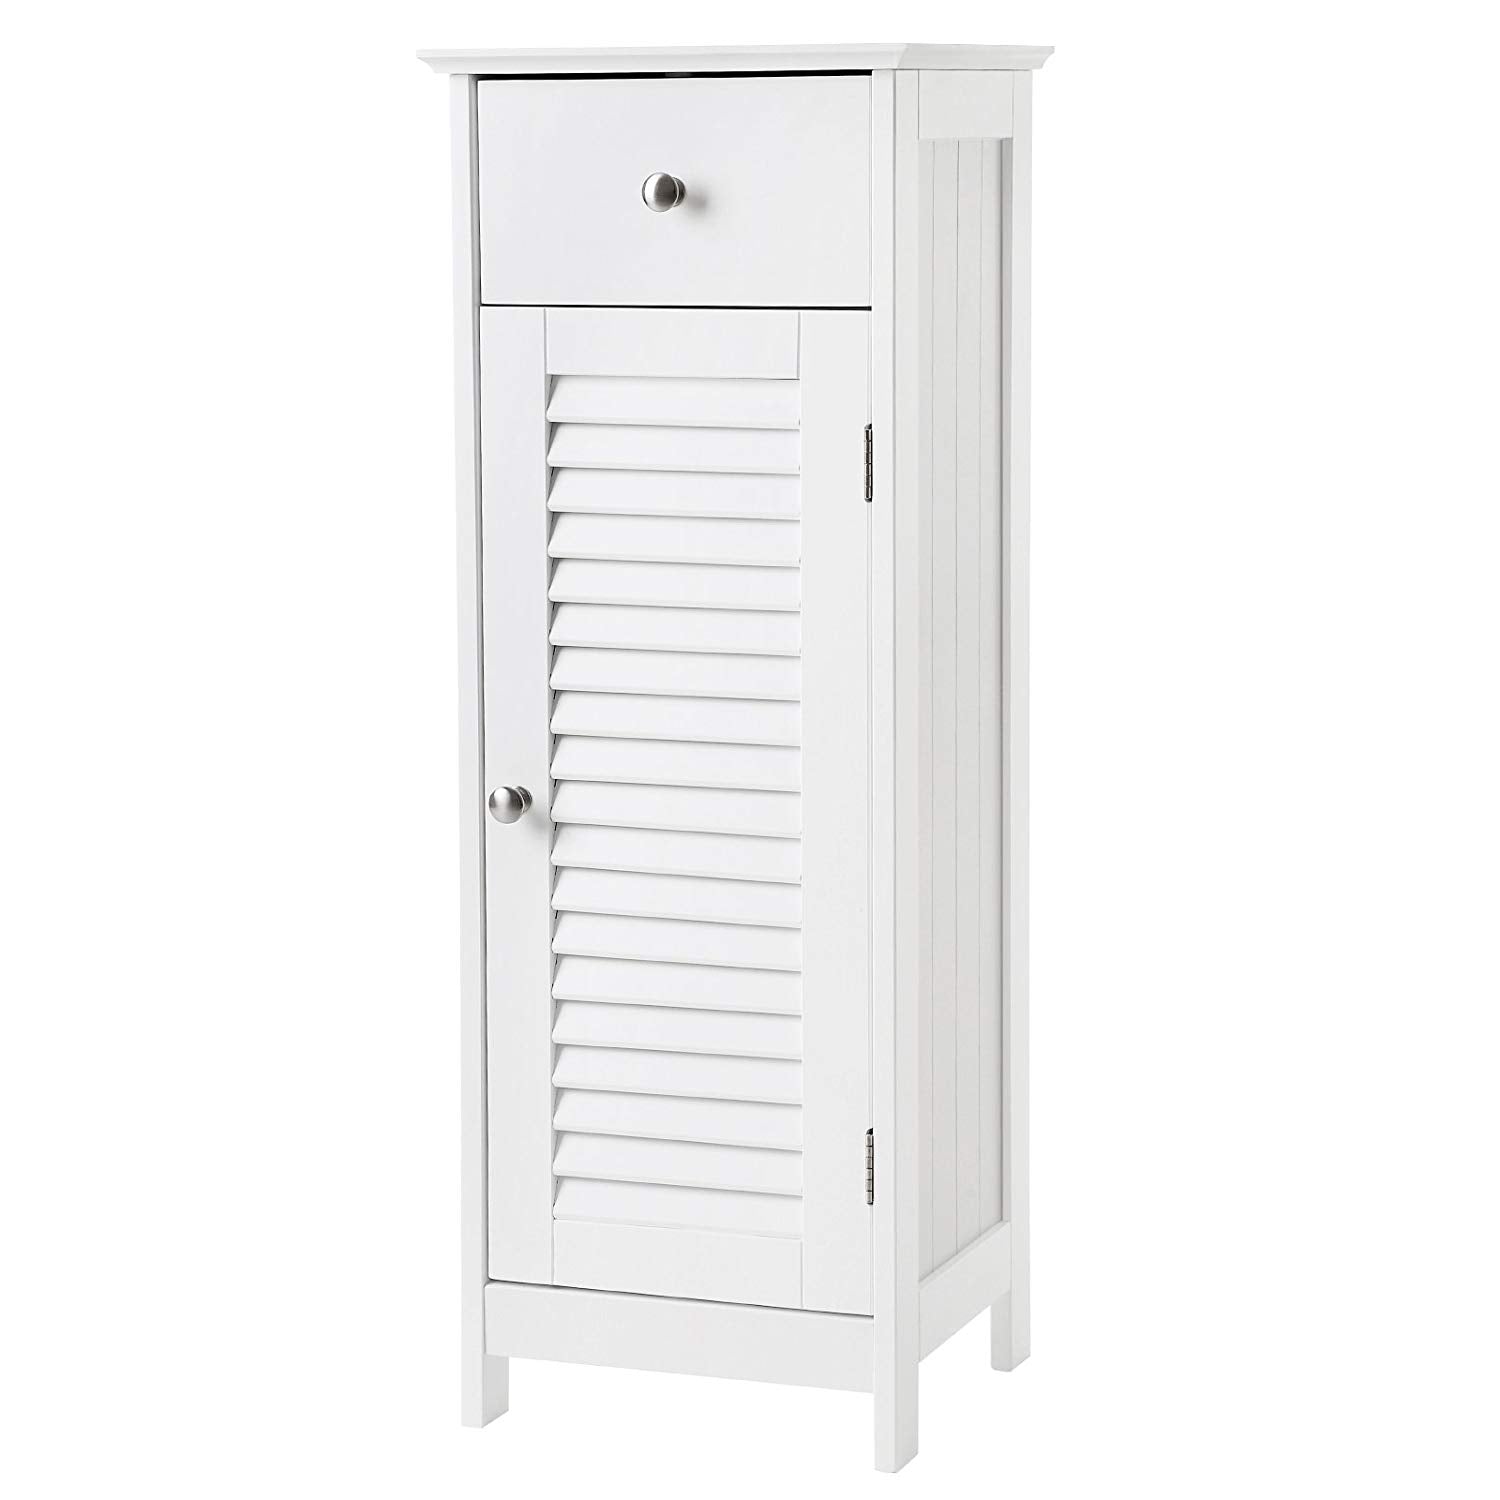 VASAGLE Bathroom Floor Cabinet Storage Organizer Set with Drawer and Single Shutter Door Wooden White UBBC43WT